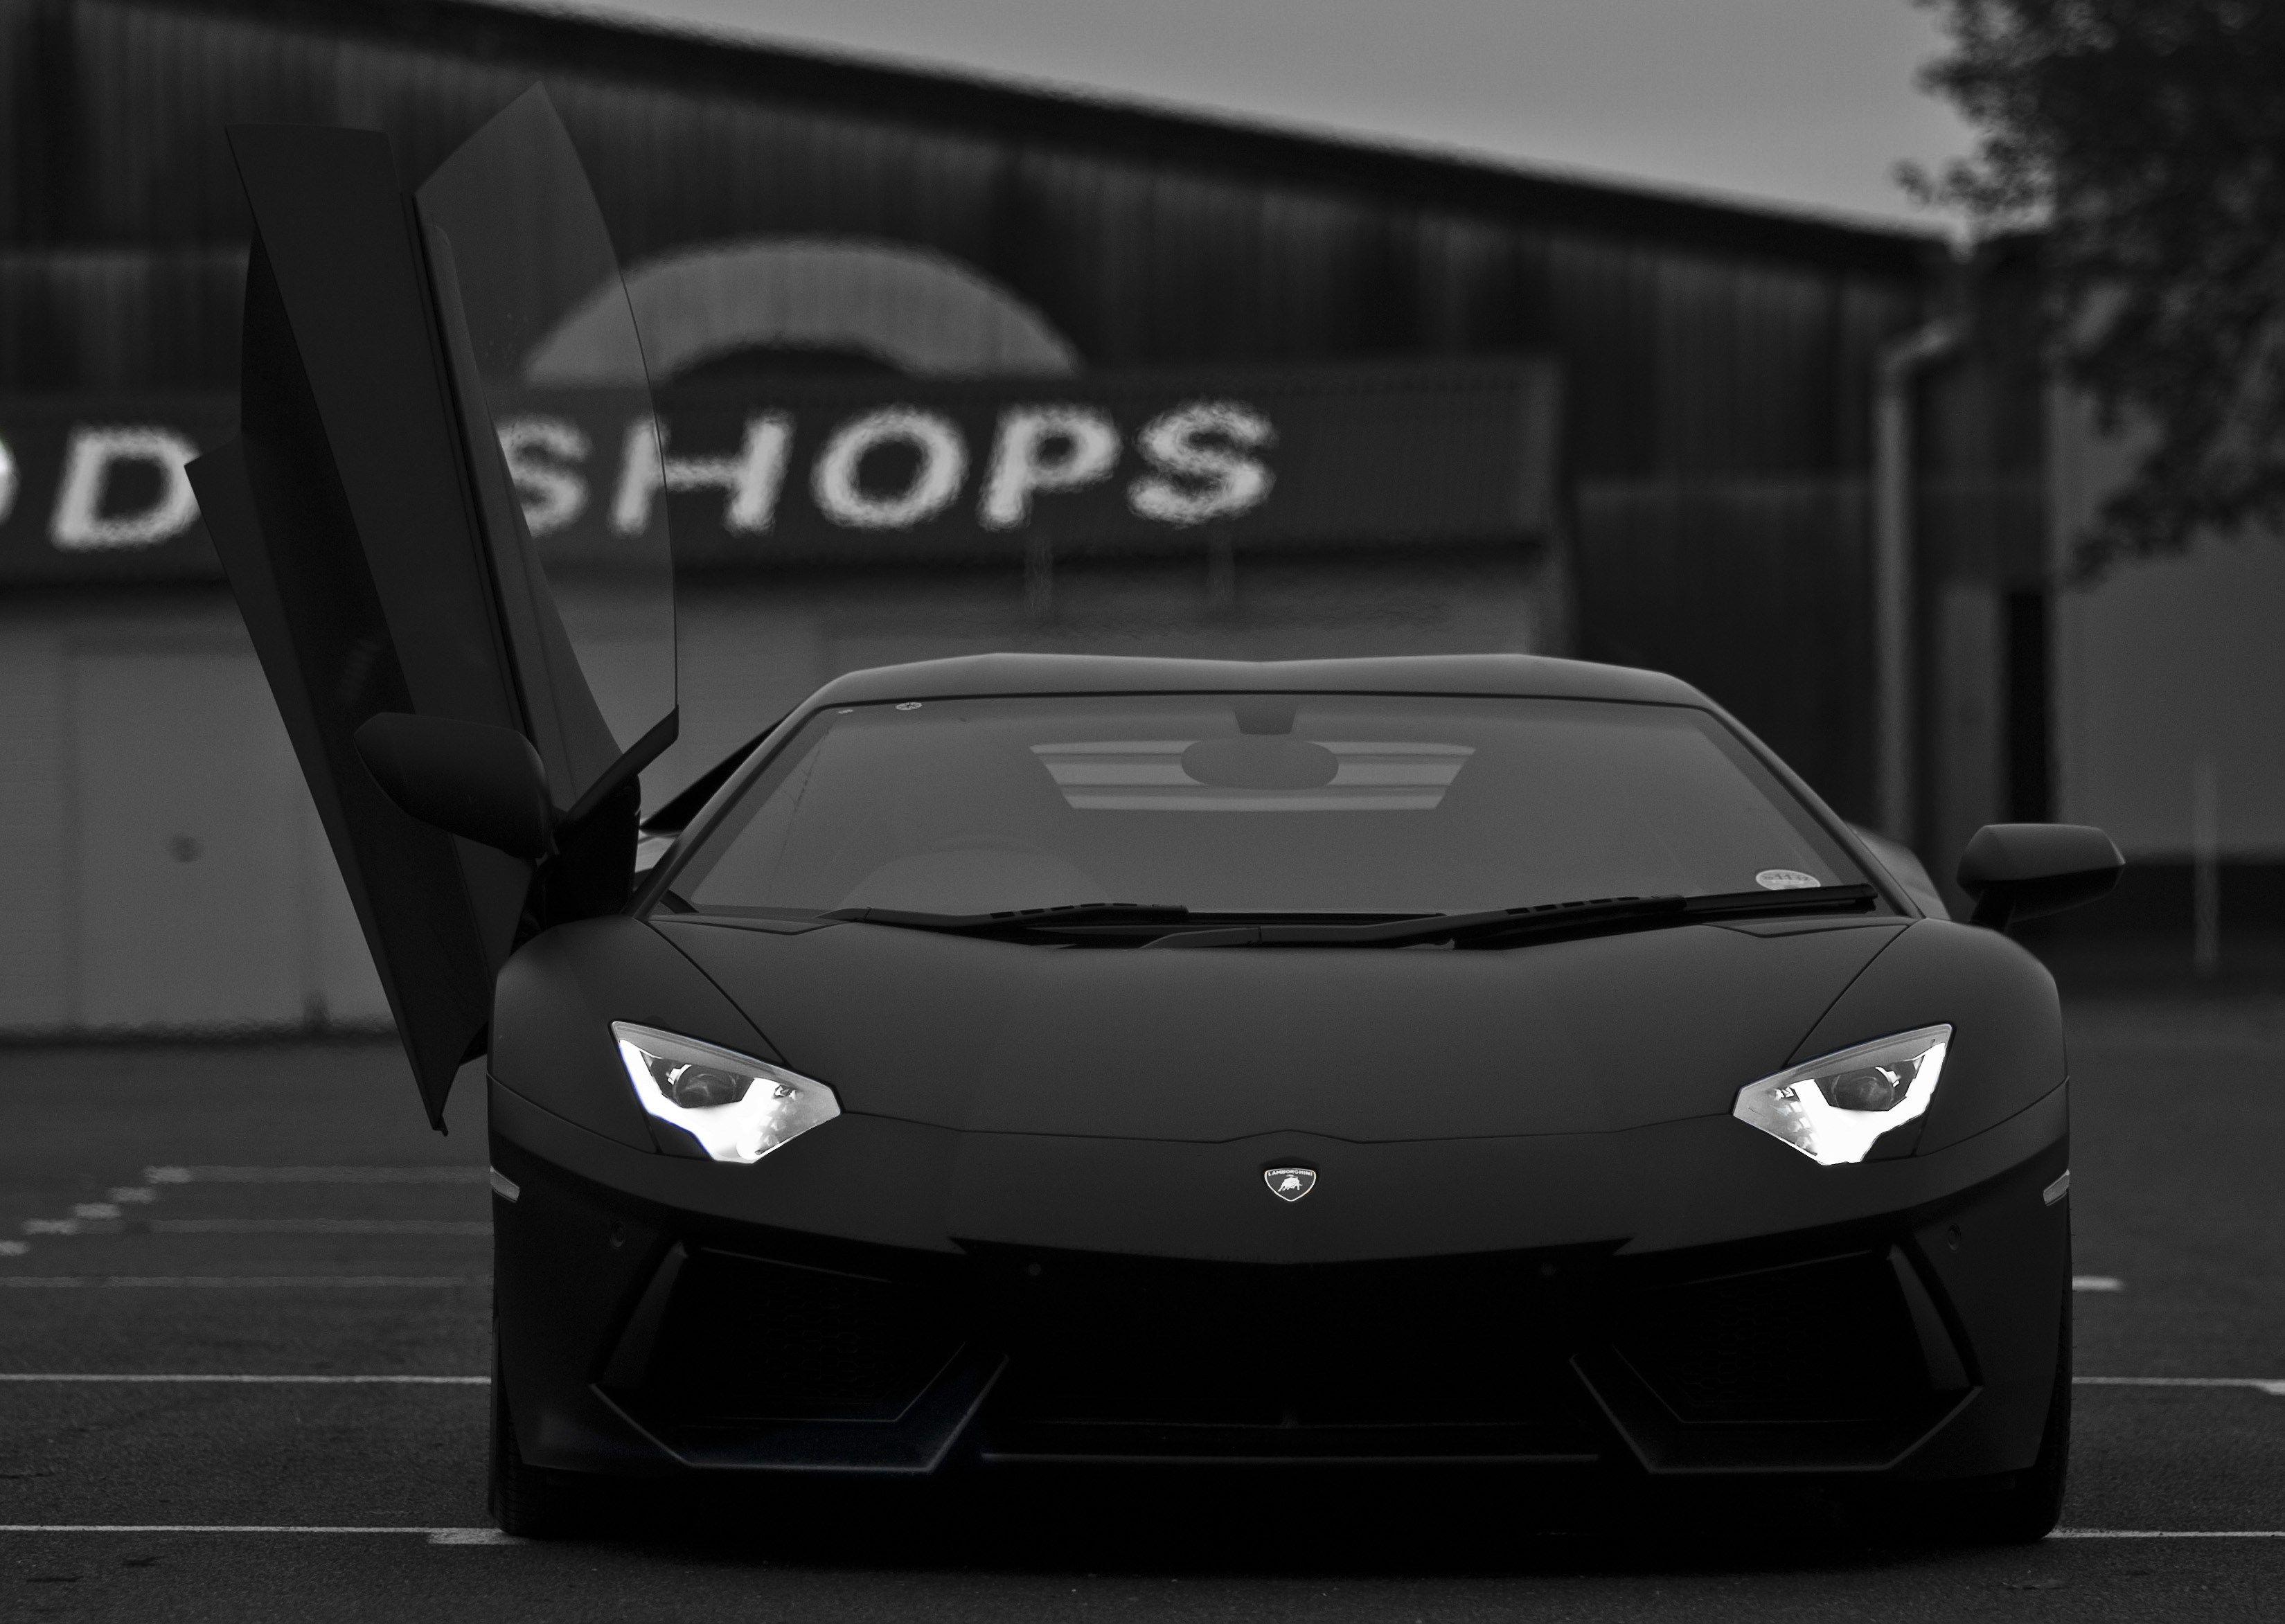 Black Lamborghini Wallpapers - Top Free Black Lamborghini Backgrounds